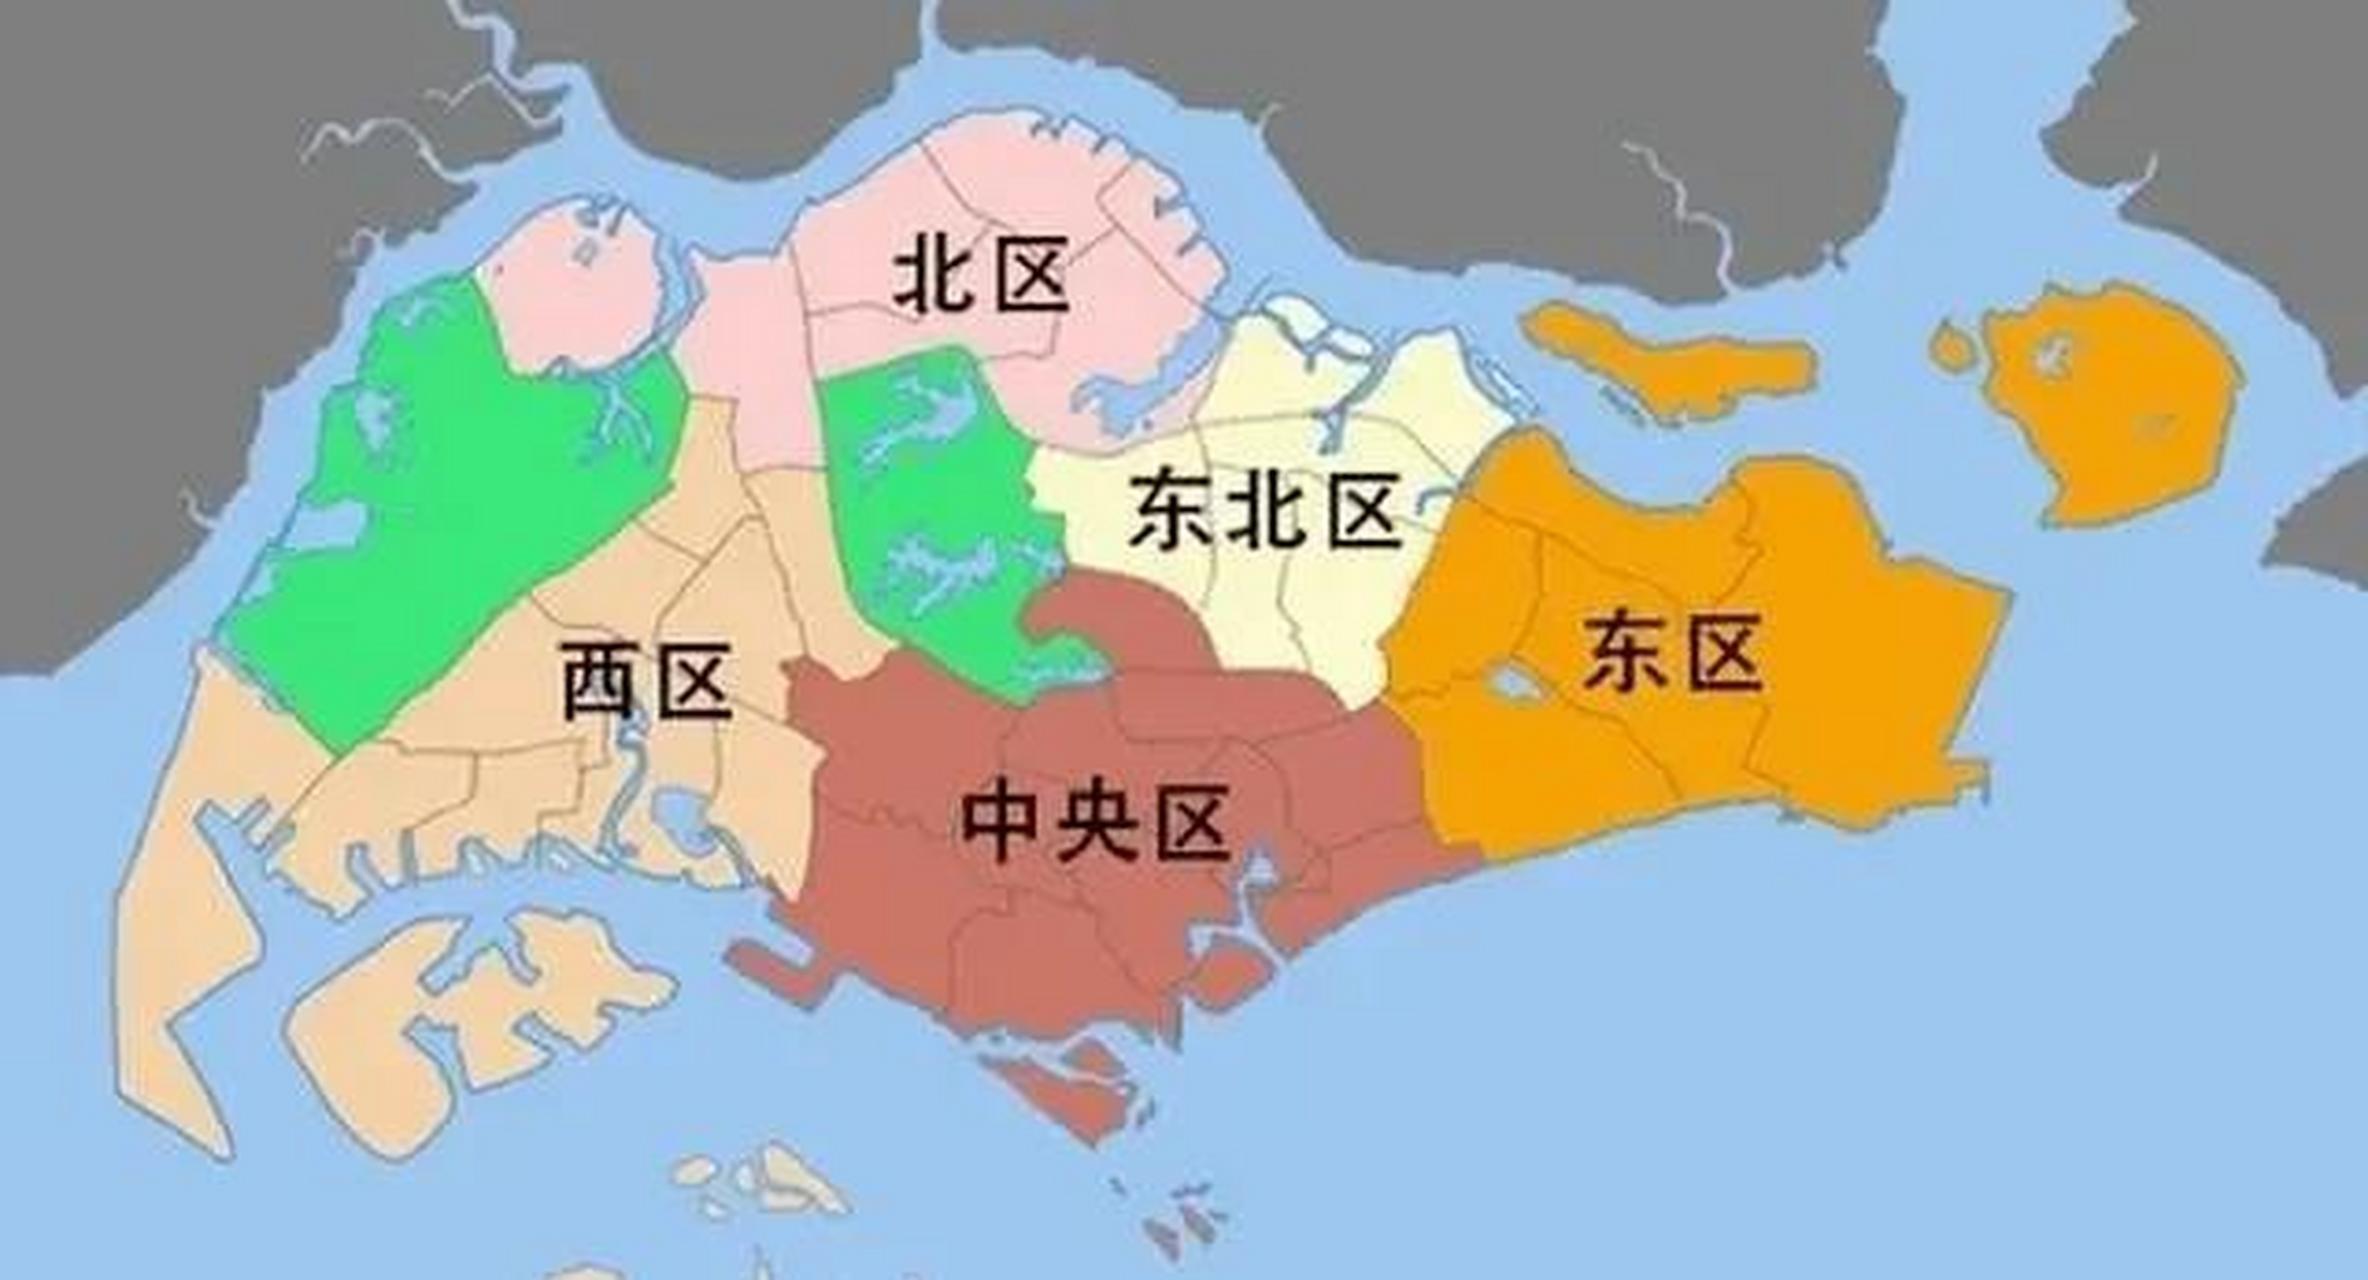 新加坡全国划分为五个行政区,共分了87个选区,但他全国总面积只有720